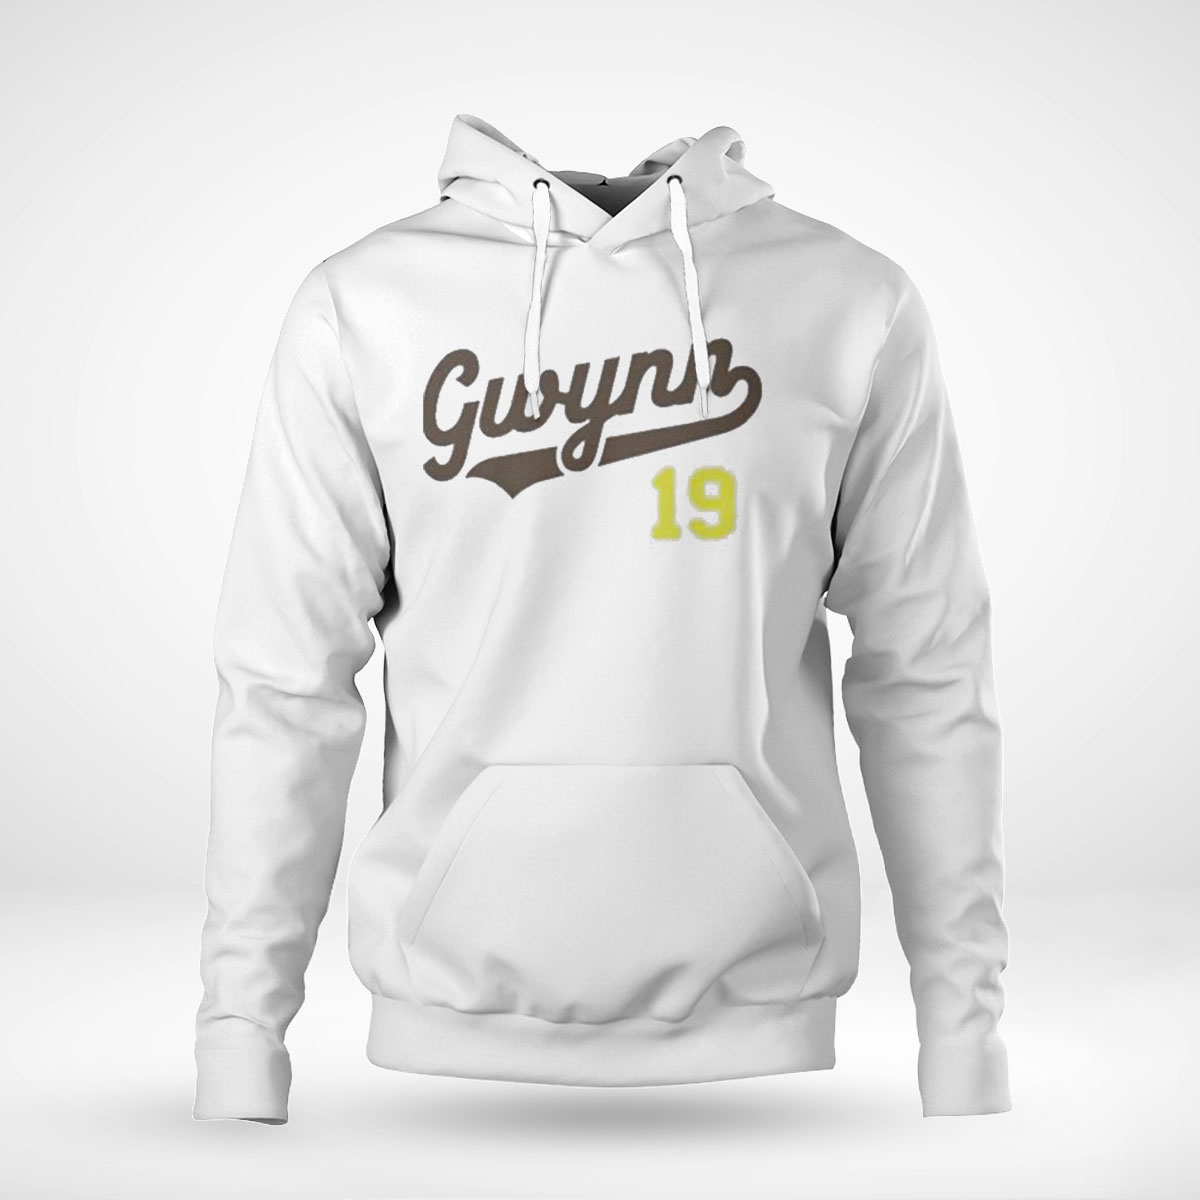 Gwynn 19 San Diego Padres T-shirt